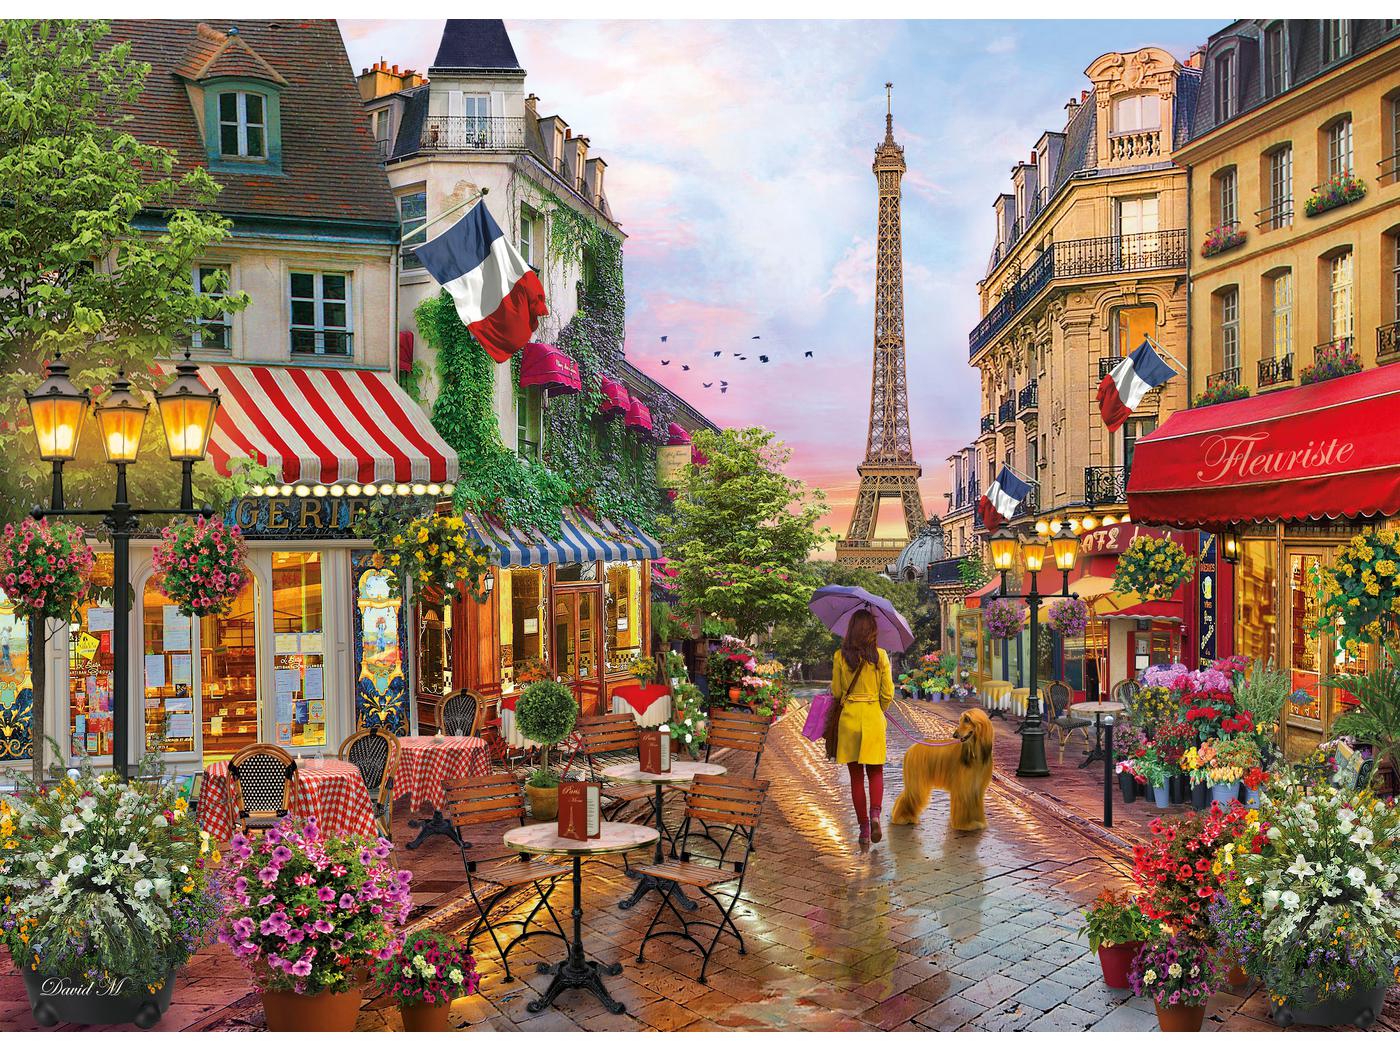 https://www.borntobekids.fr/image/410456/1400x1050/1/clementoni-39482-puzzle-adulte-1000-pieces-flowers-in-paris-1400.jpg